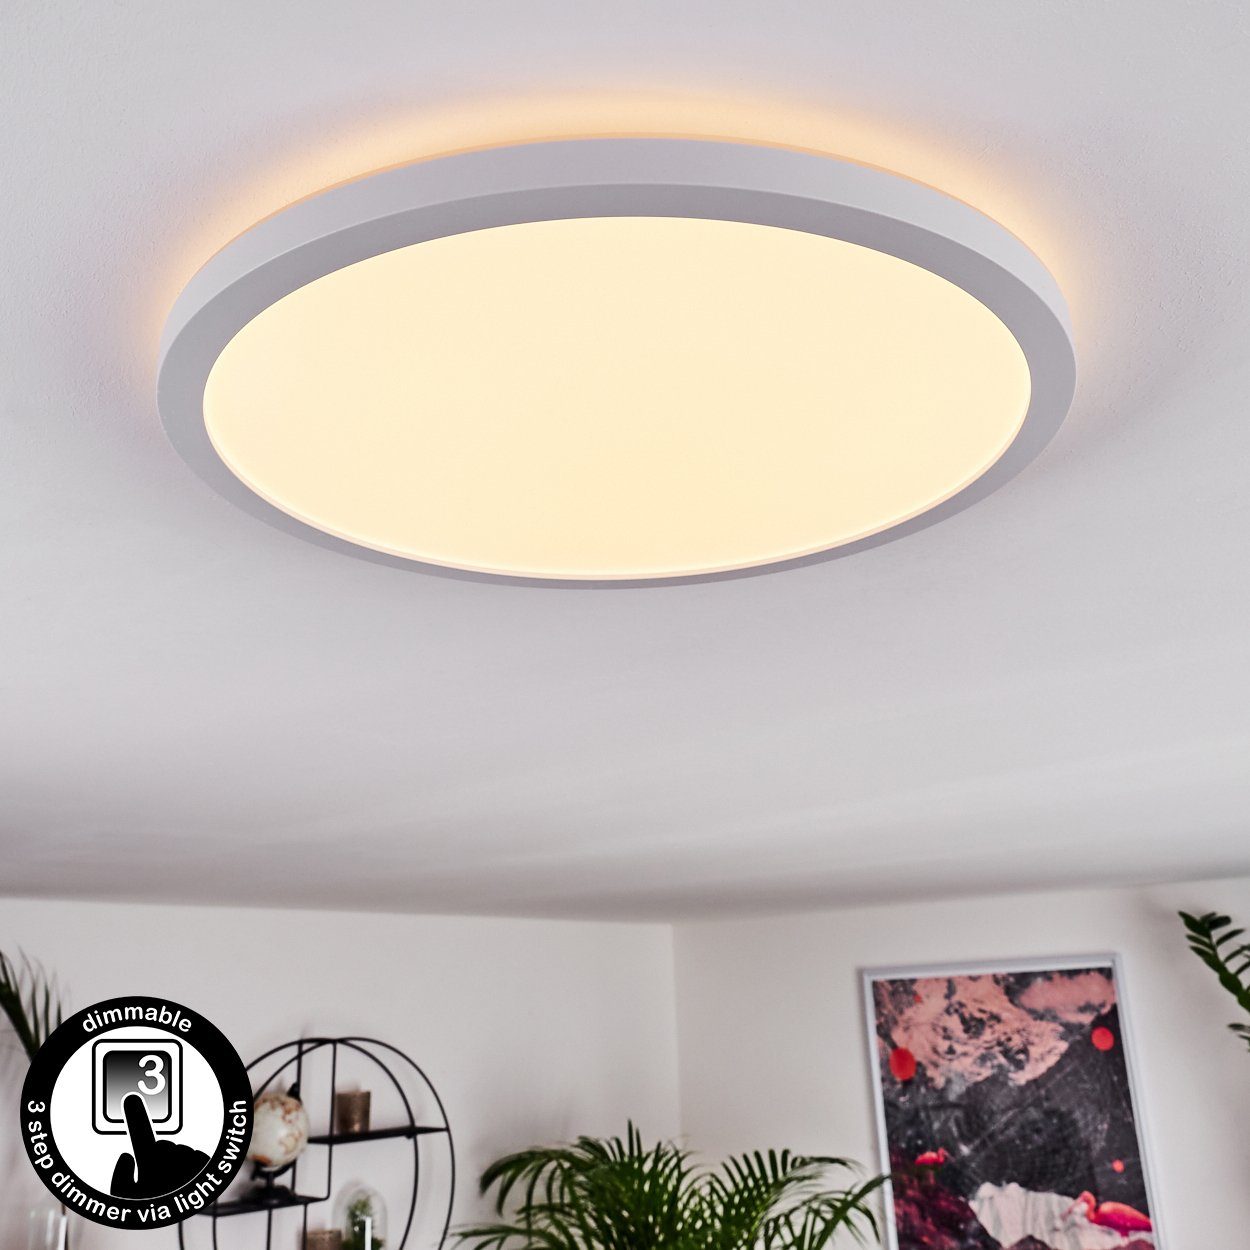 hofstein Panel LED Decken Lampe Panel dimmbar Ess Wohn Schlaf Zimmer Raum Beleuchtung